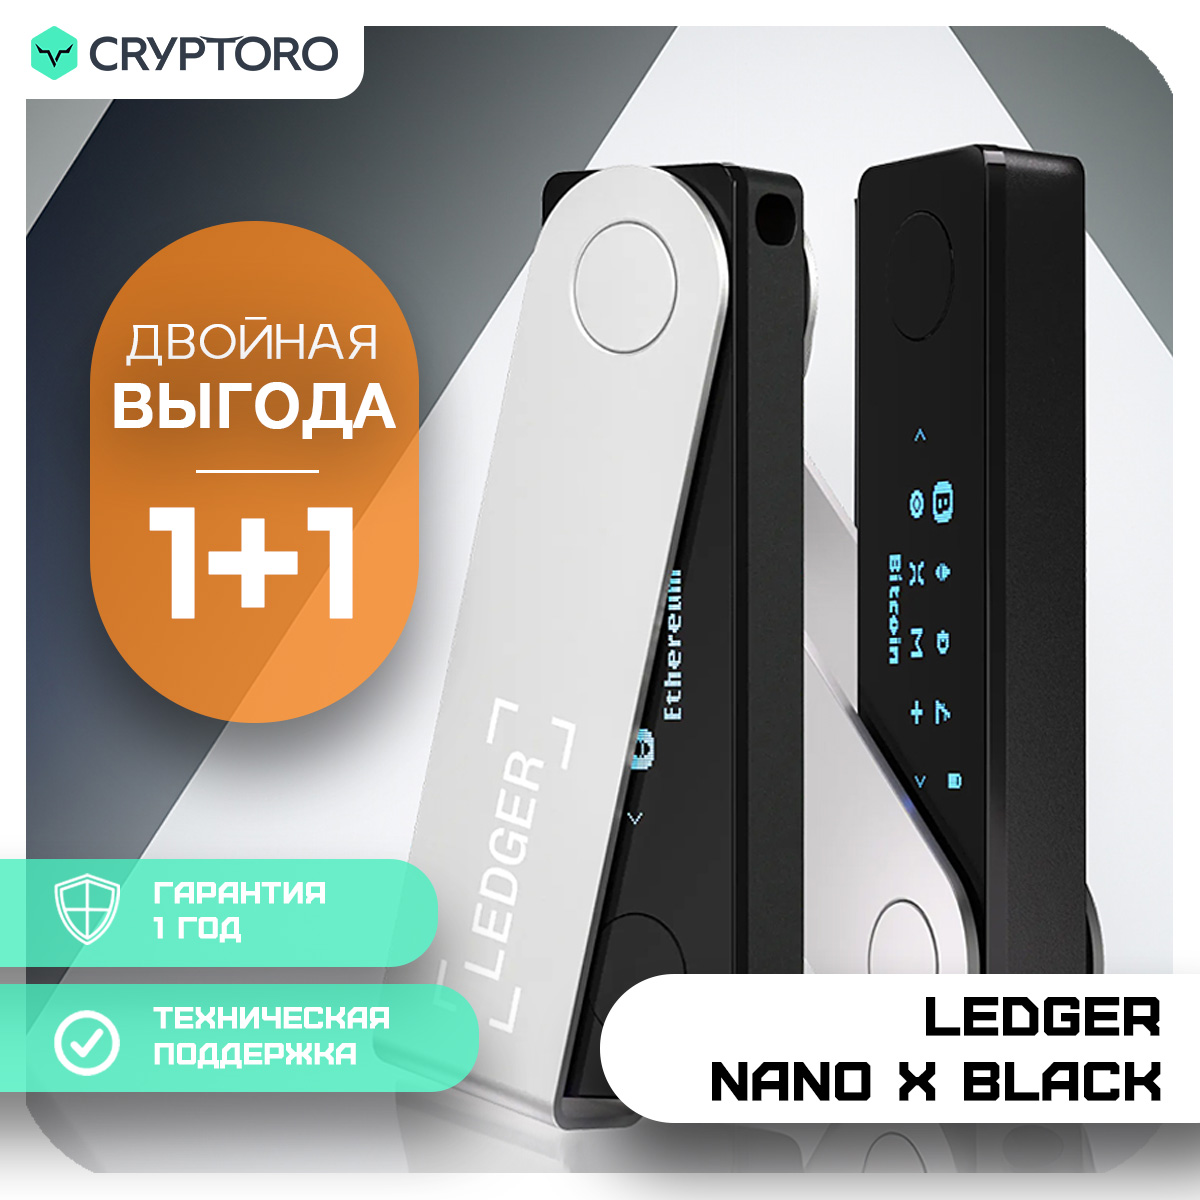 Набор Ledger Nano X из 2-х аппаратных криптокошельков